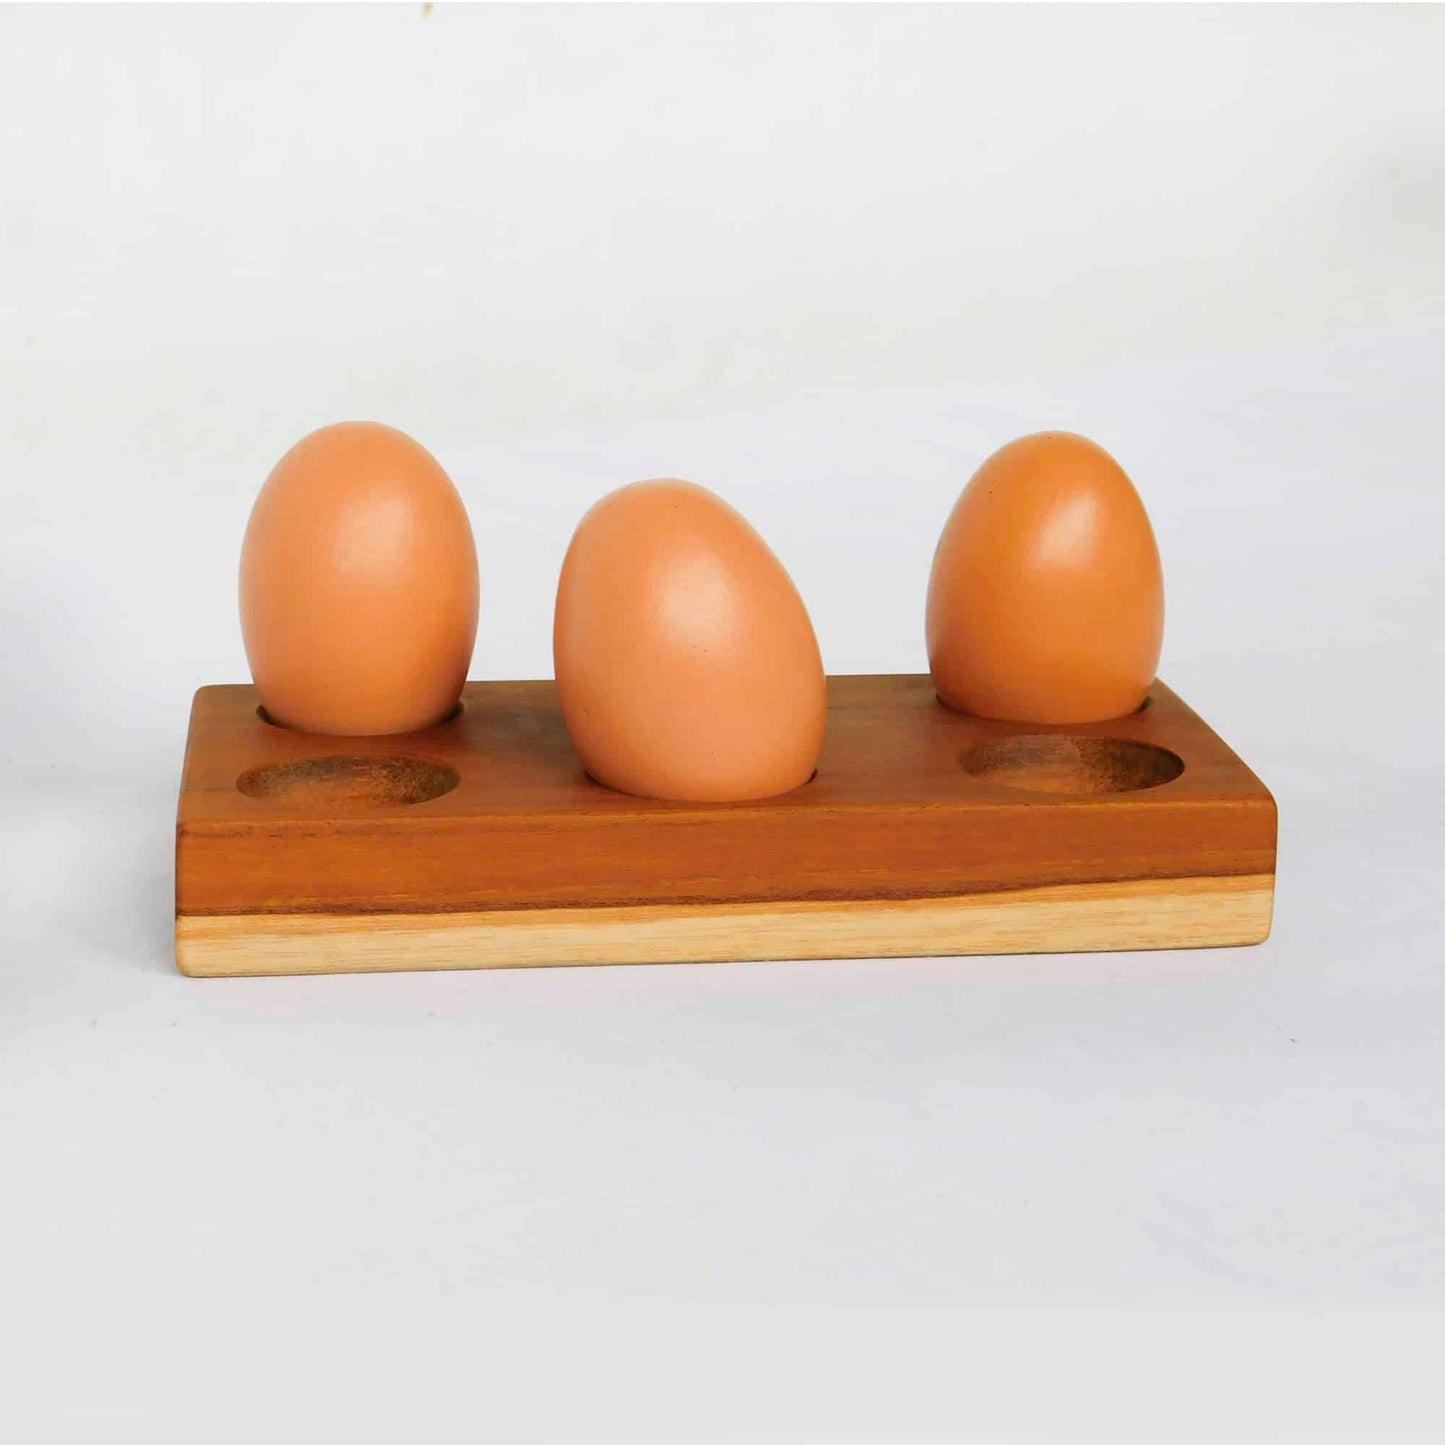 Organizador de huevos